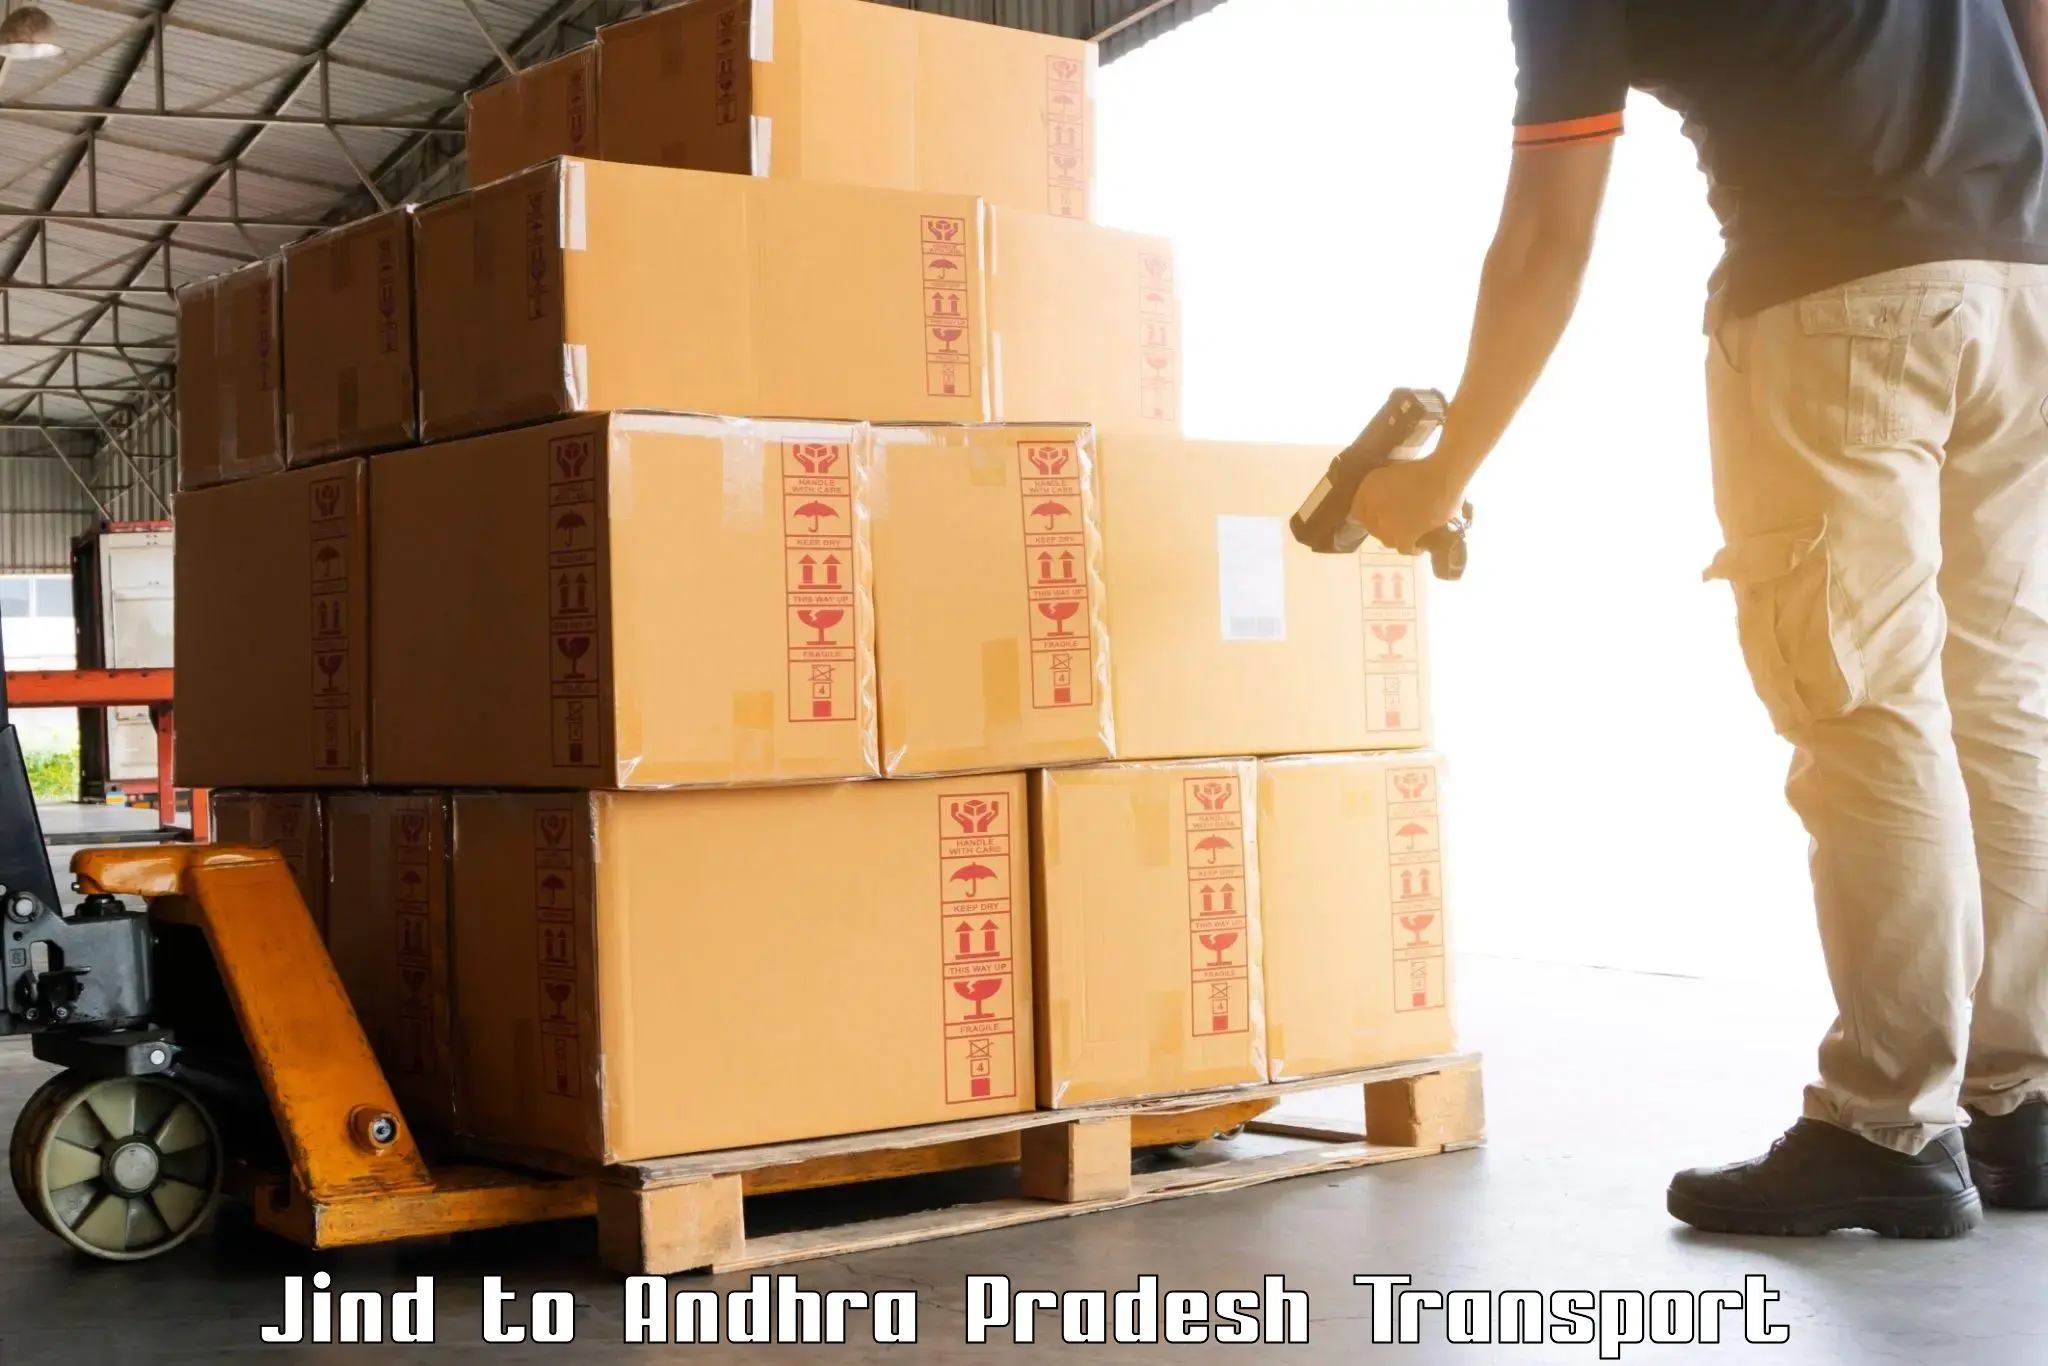 Delivery service Jind to Pedanandipadu